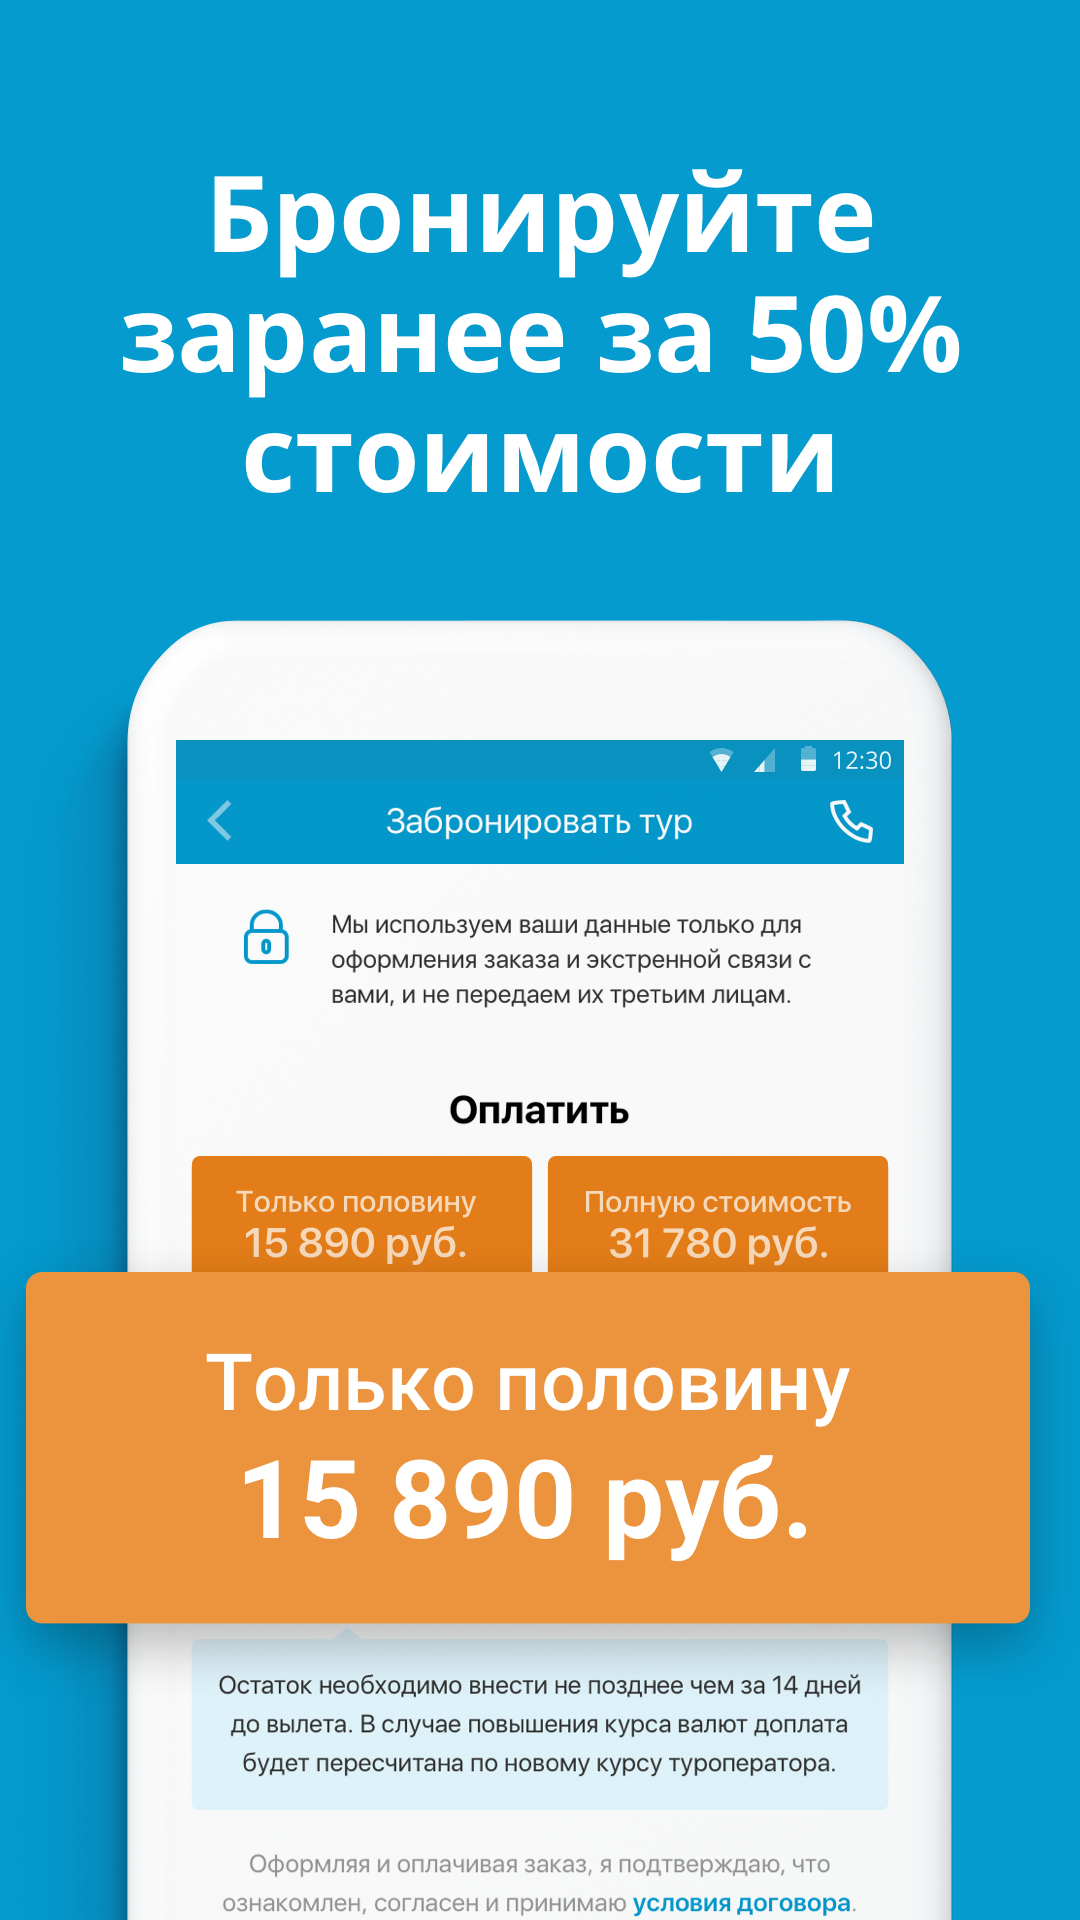 Android application Travelata.ru Все горящие туры и путевки онлайн screenshort